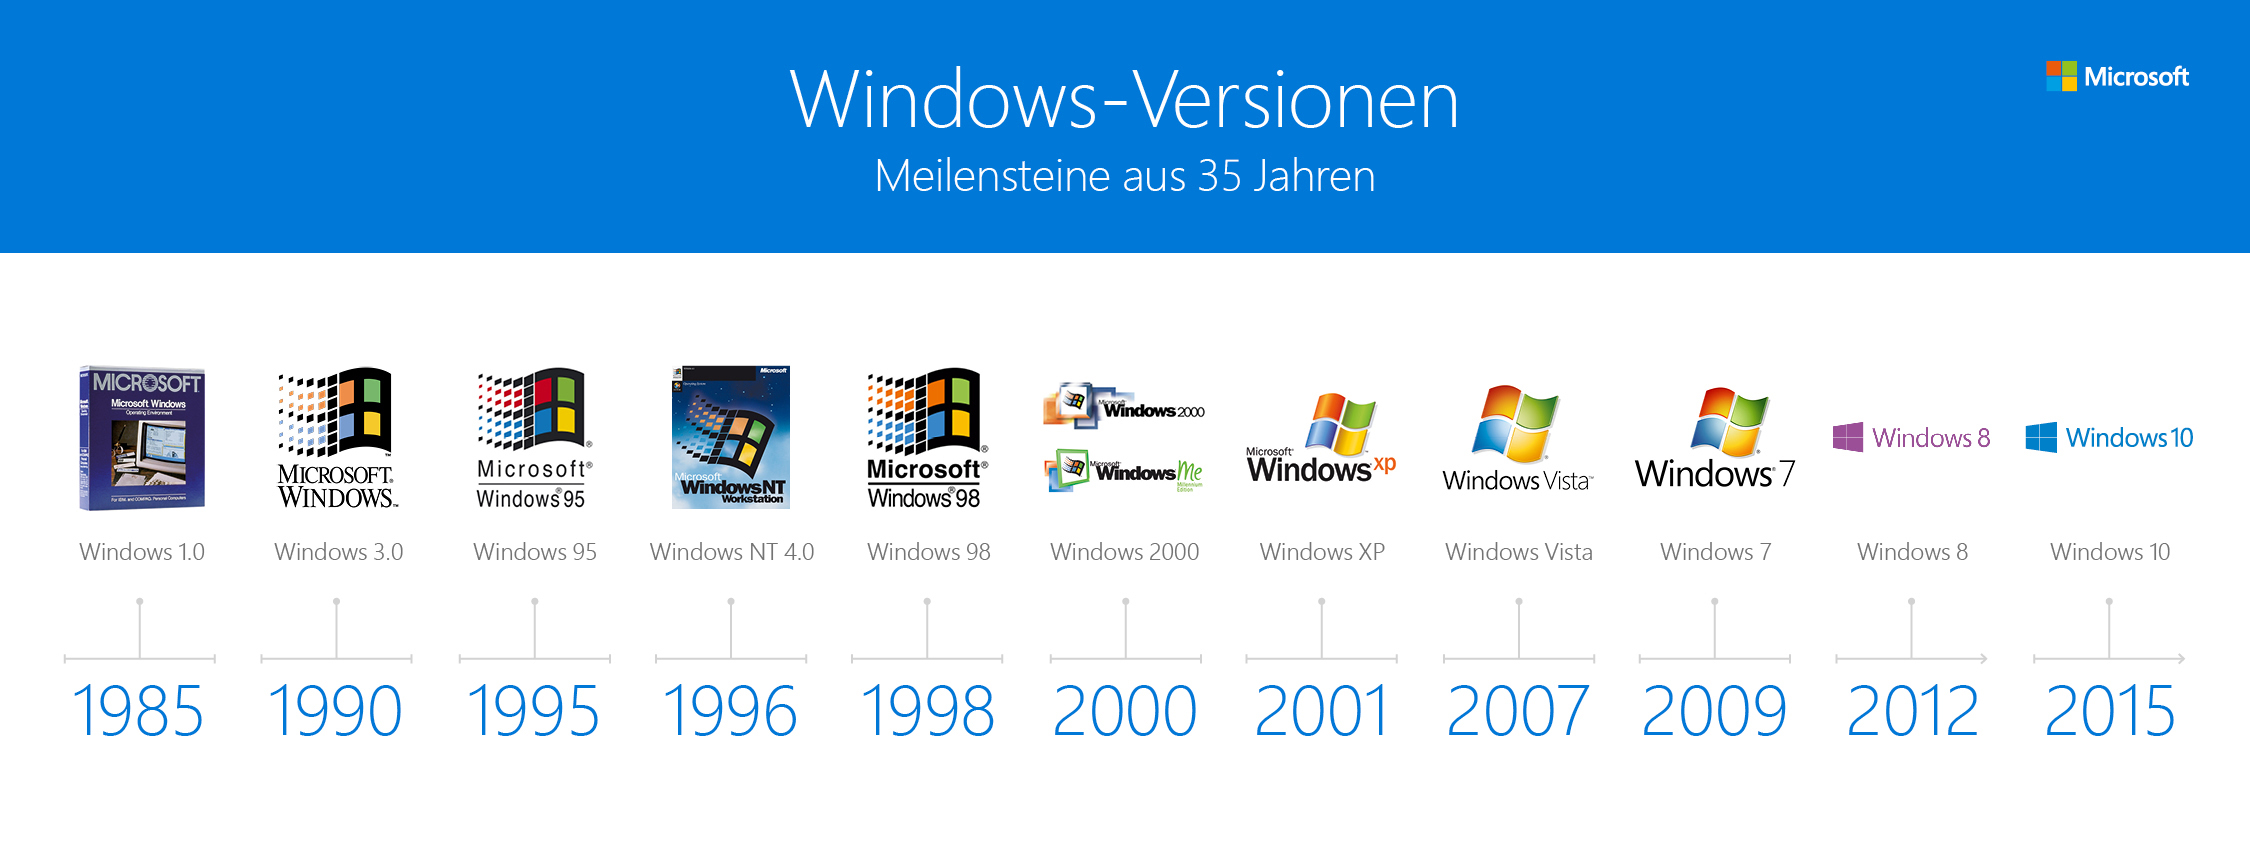 Новейшие операционные системы windows. Версии ОС виндовс. Эволюция ОС Windows. Поколения Windows. Версии виндовс по годам.